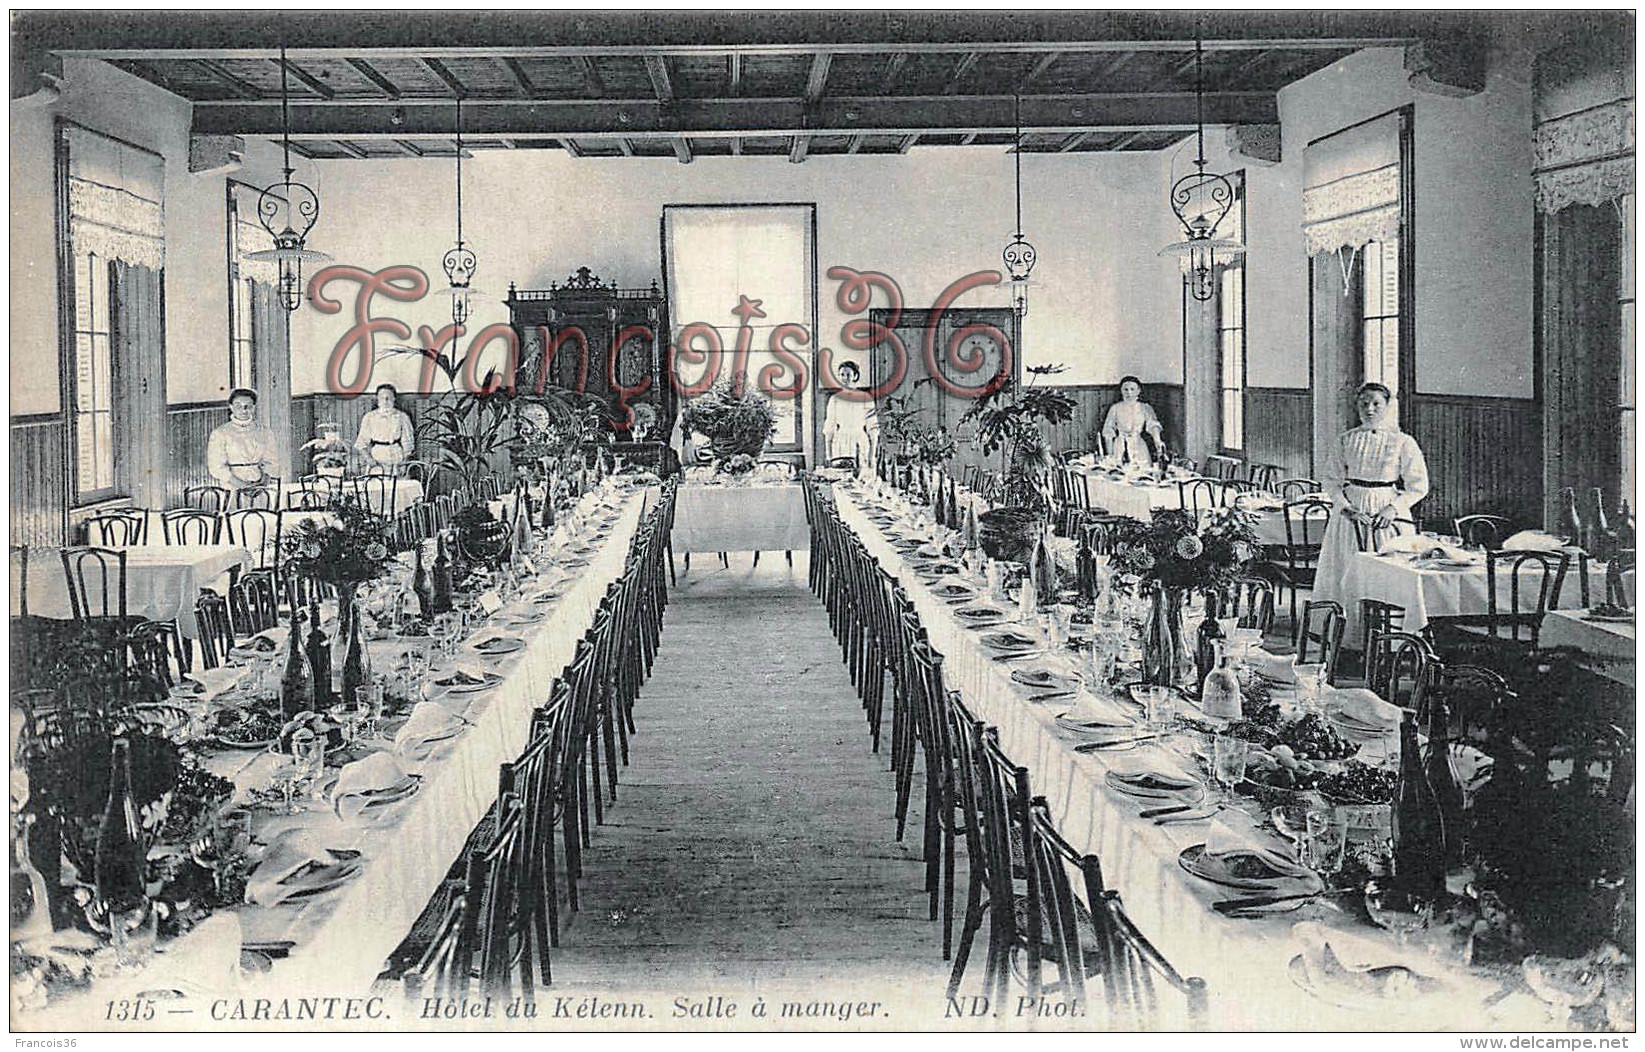 La salle à manger de l'ancien Hotel du Kélenn (famille Charles)